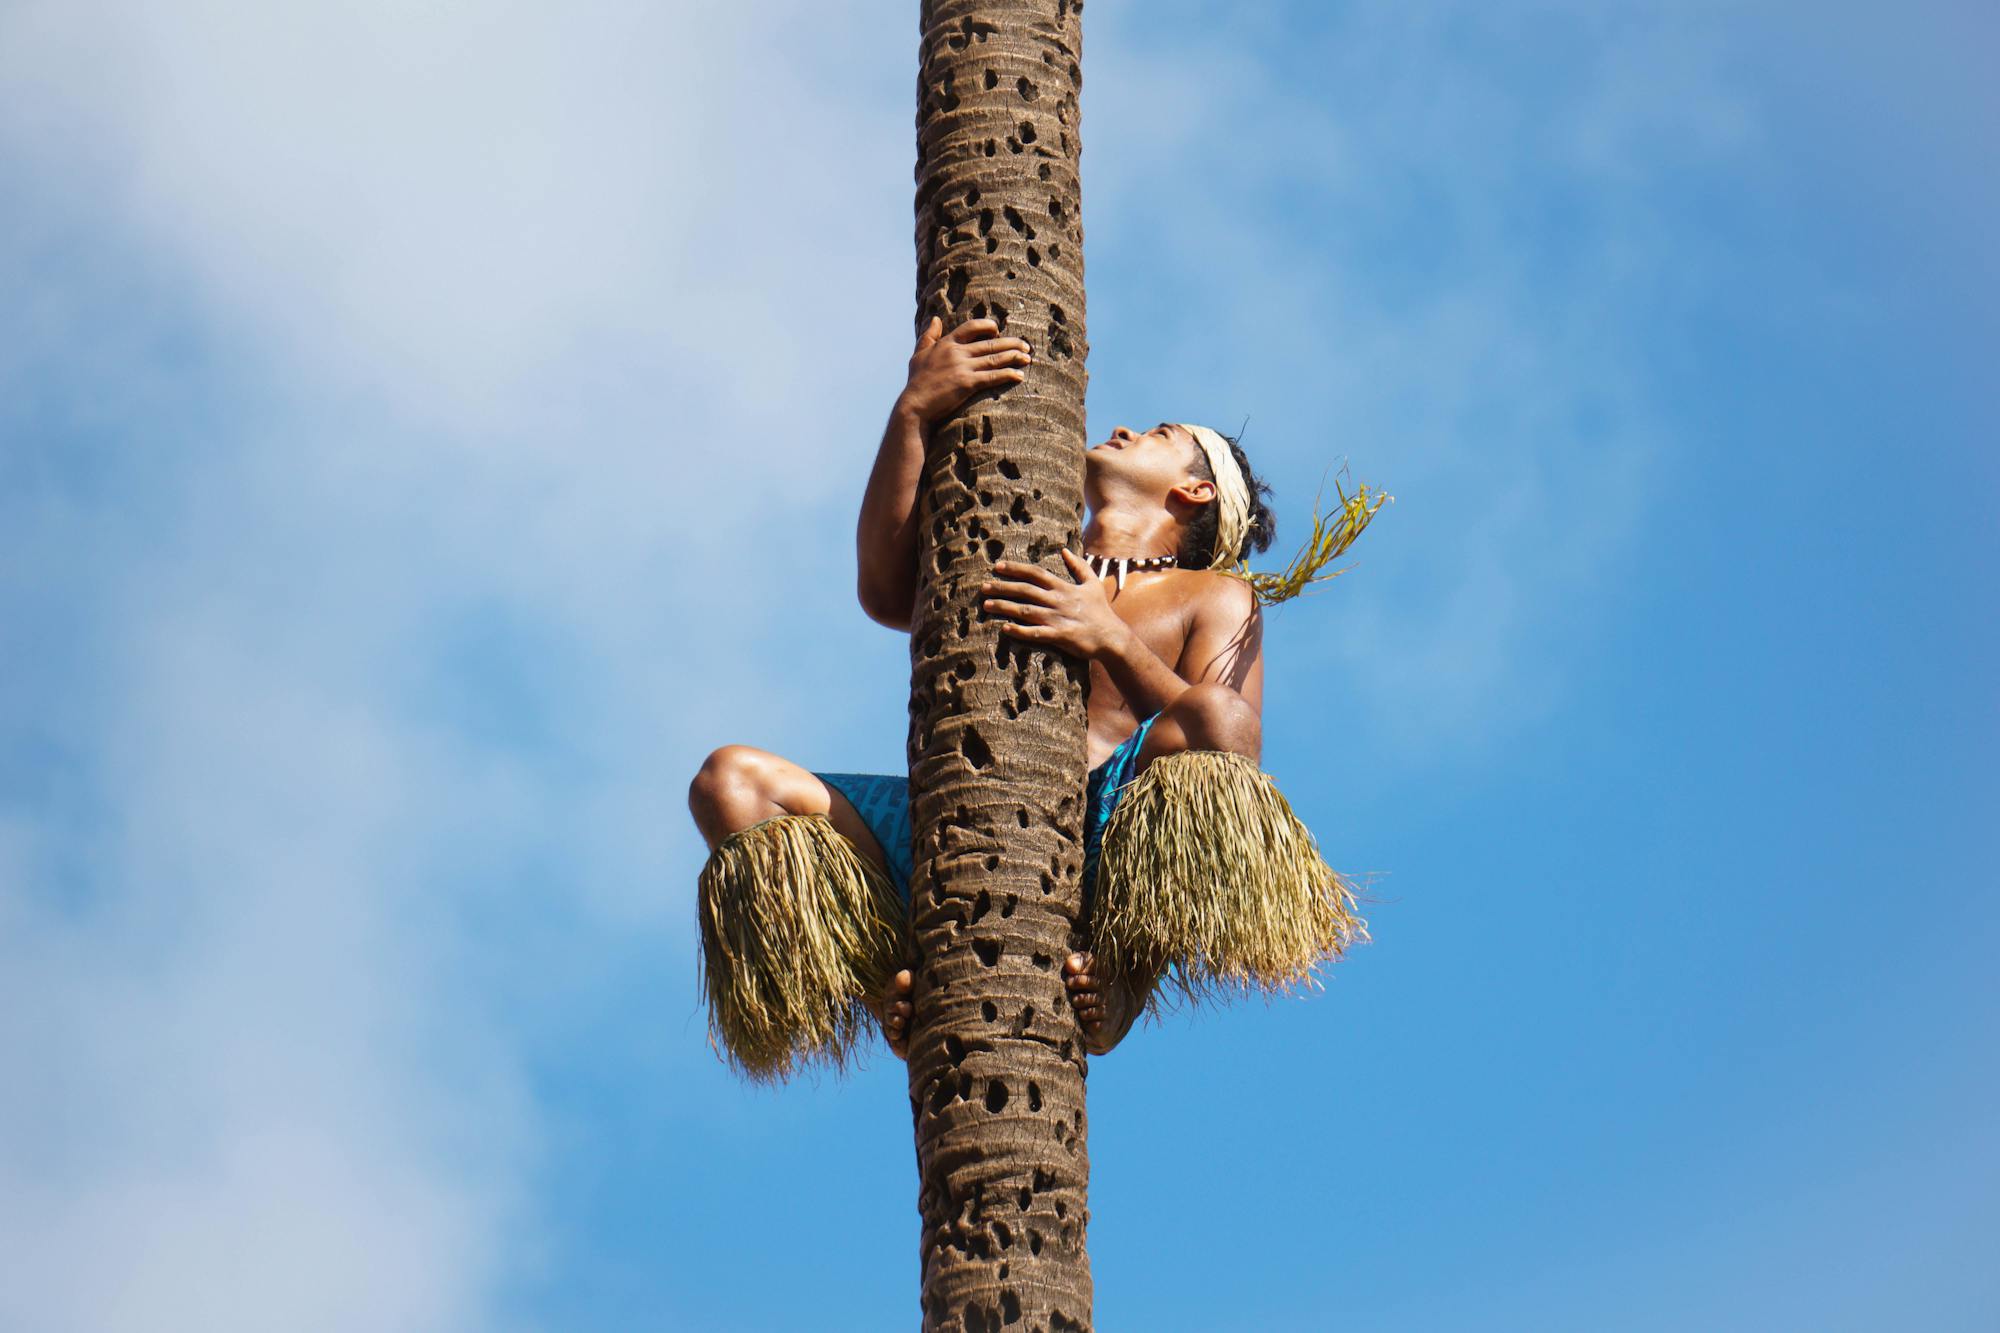 Miejscowy mieszkaniec wspina się na palmę, aby zebrać kokosy.